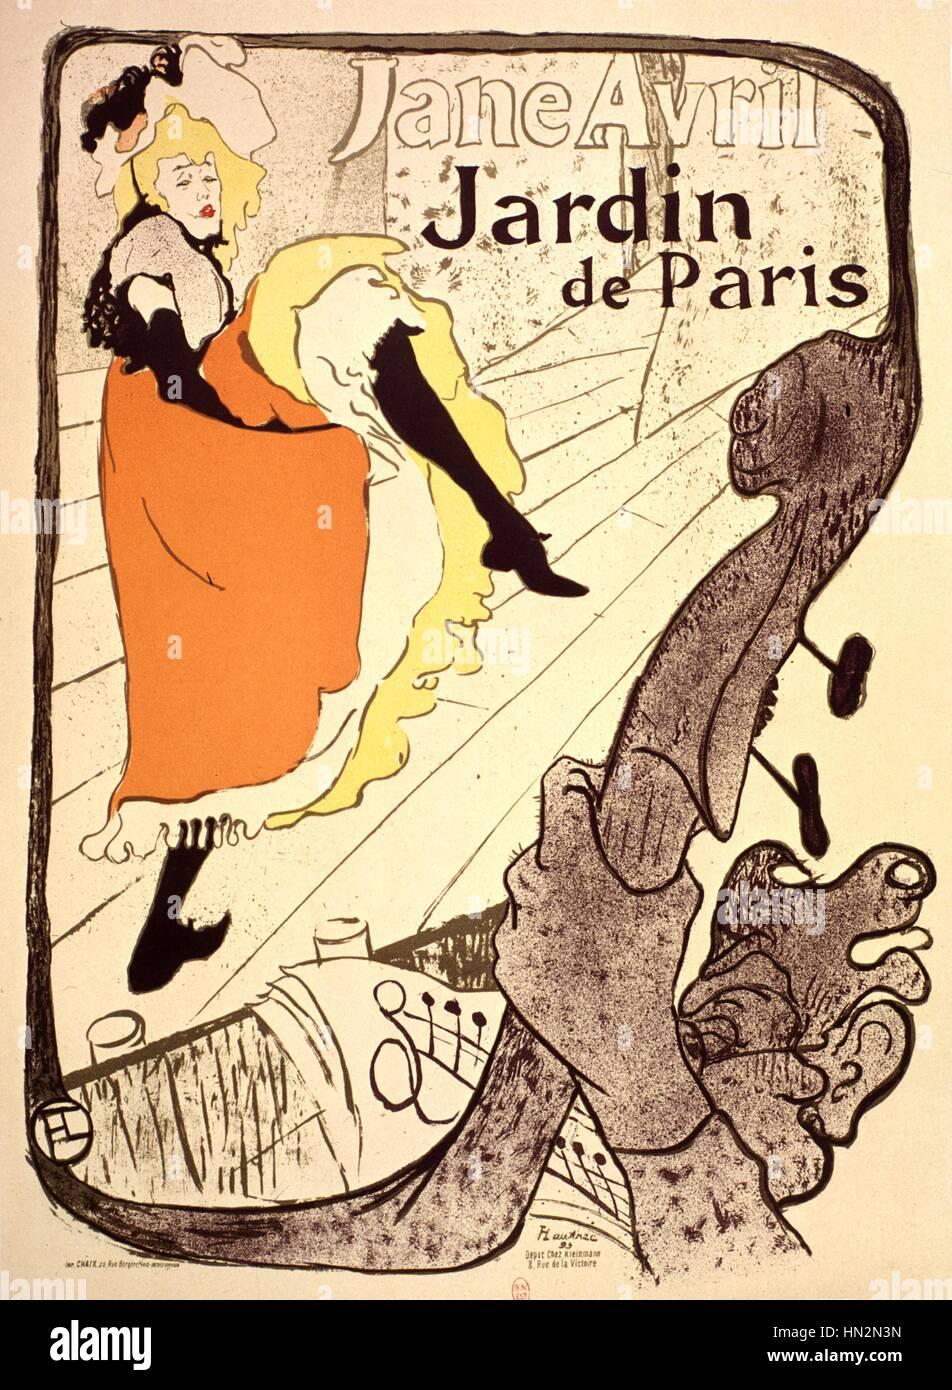 Affiche publicitaire : Jane Avril au Jardin de Paris 19ème siècle Toulouse-Lautrec Banque D'Images